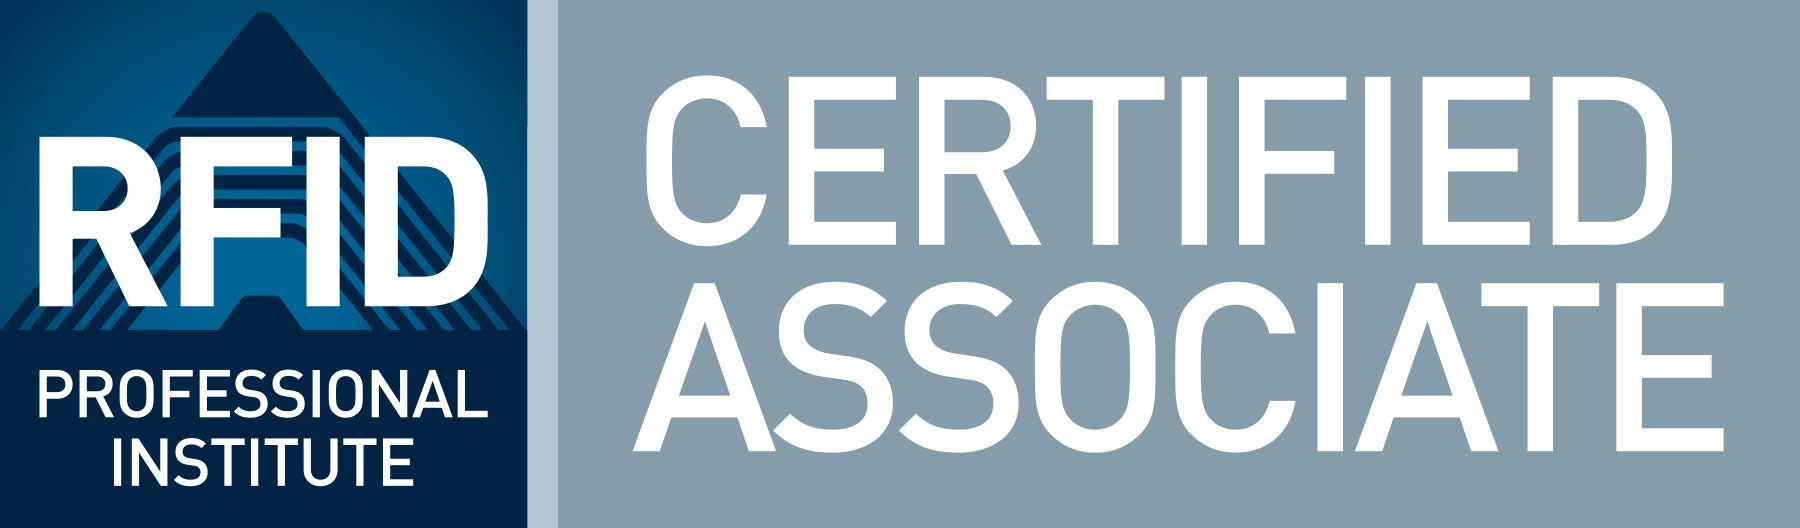 RFID Professional Institute Associate Certified